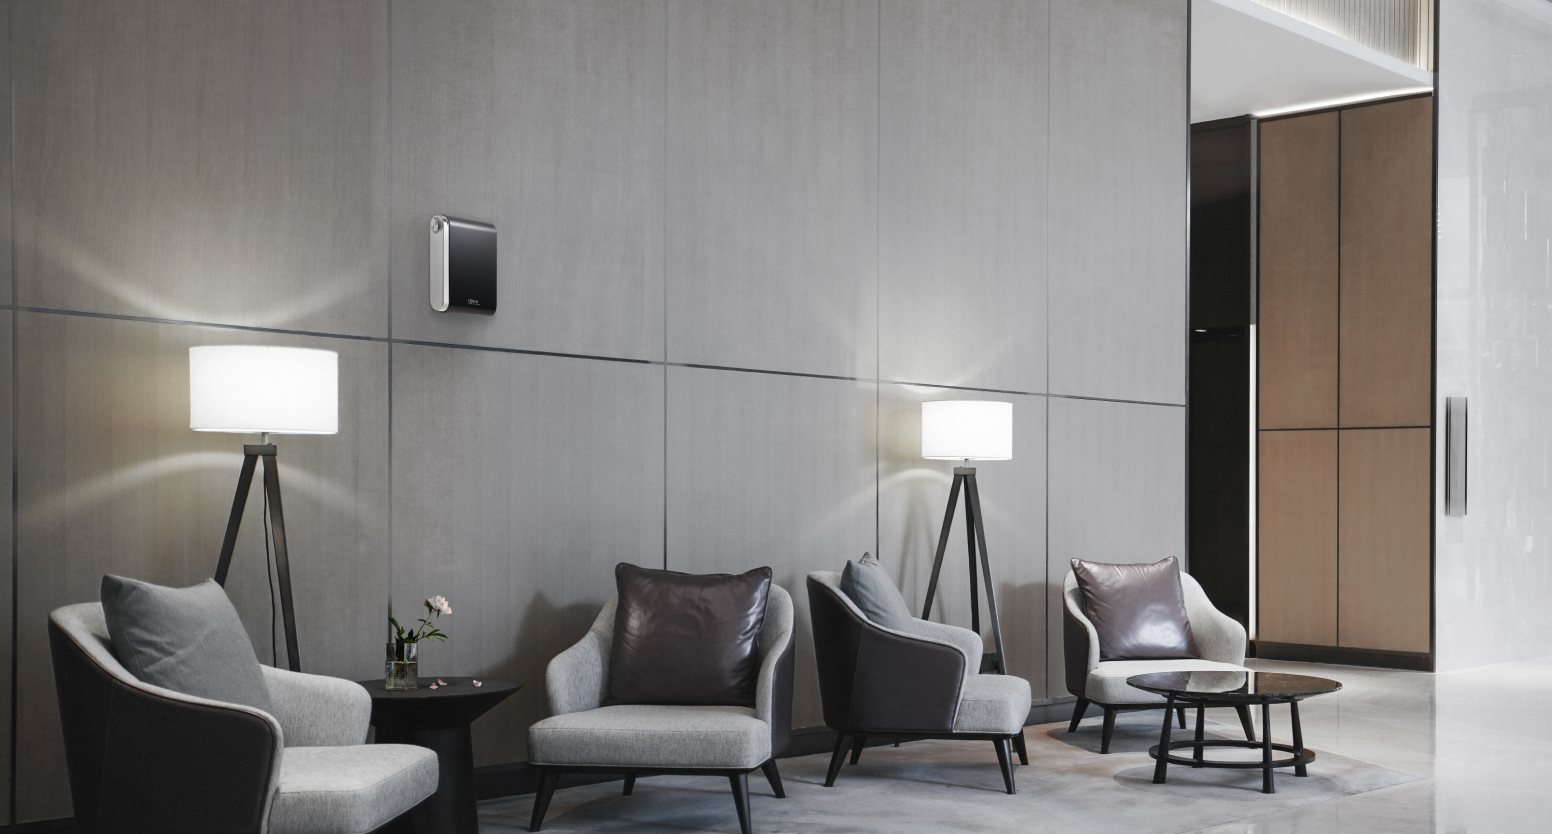 의자 및 탁자가 놓여있는 호텔 및 리조트의 로비 공간 위쪽 벽면에는 쾌적하고 향기로운 공간을 만들어주는 세스코(CESCO)의 에어퍼퓸이 벽면에 설치되어 있습니다.